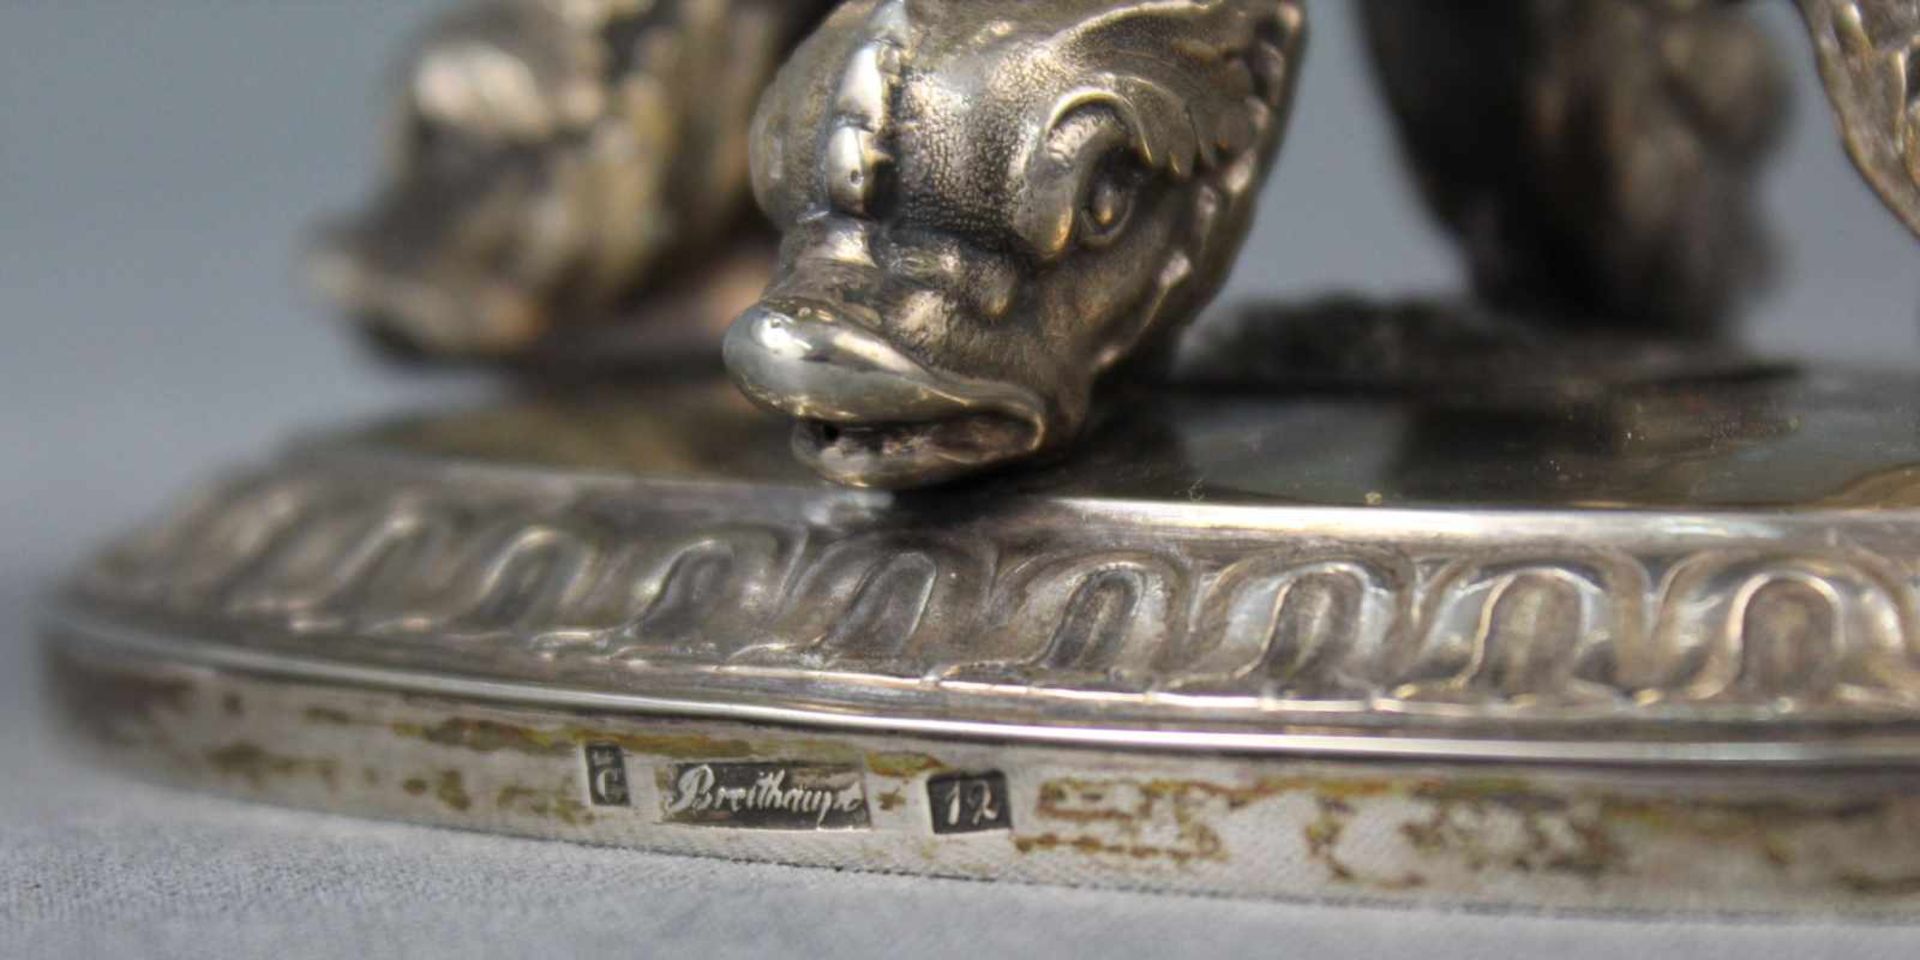 Tafelaufsatz Silber Delfinen "G (mit Krone) Breithaupt 12 (Lot)". 19. Jahrhundert.18 cm hoch. - Bild 10 aus 10